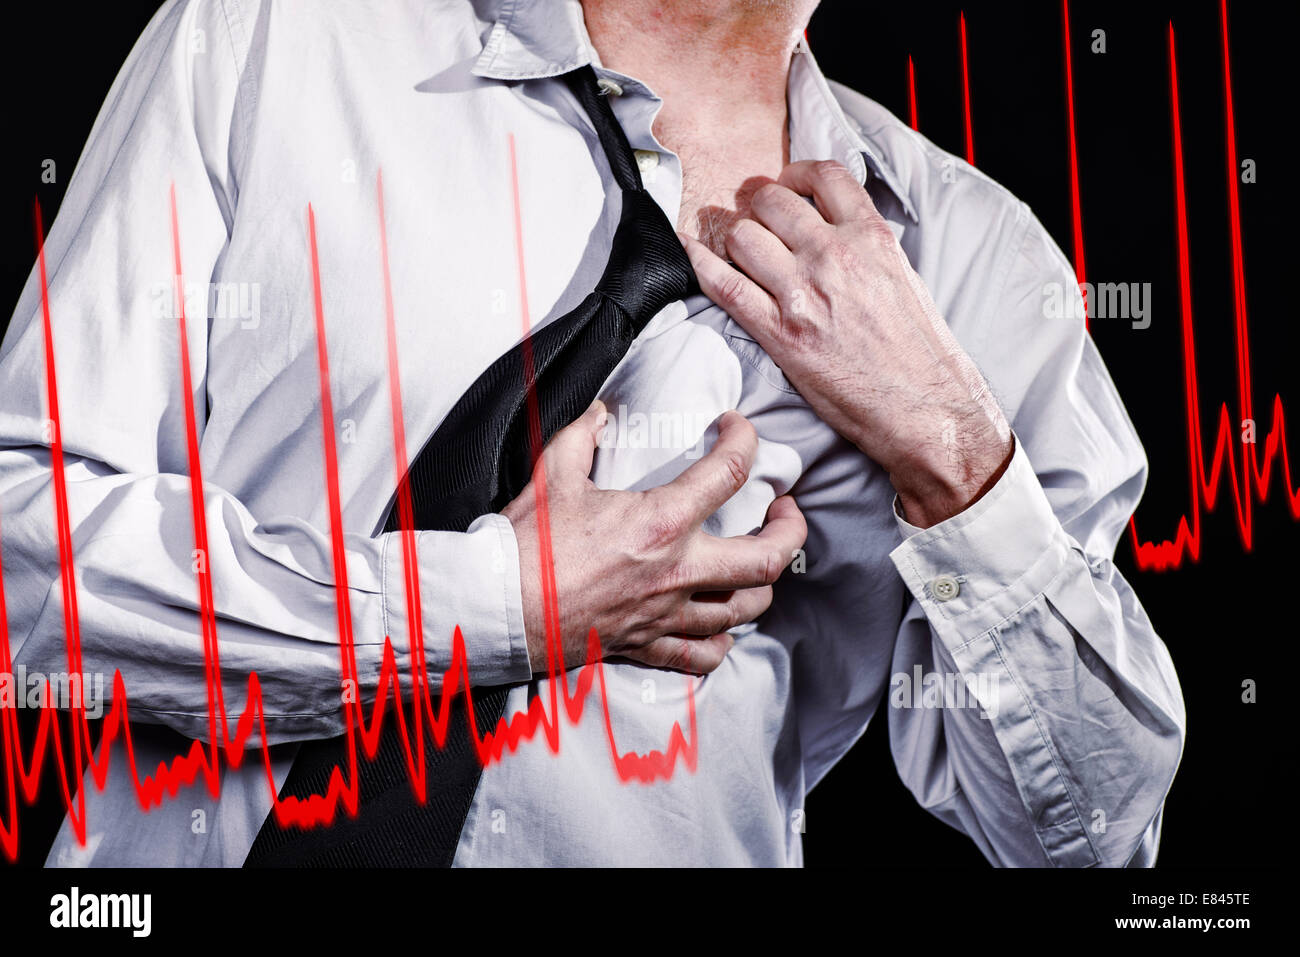 Homme Thumbs up avec un étroit part à son coeur et arrache sa chemise. La courbe d'un ECG est illustré. Banque D'Images